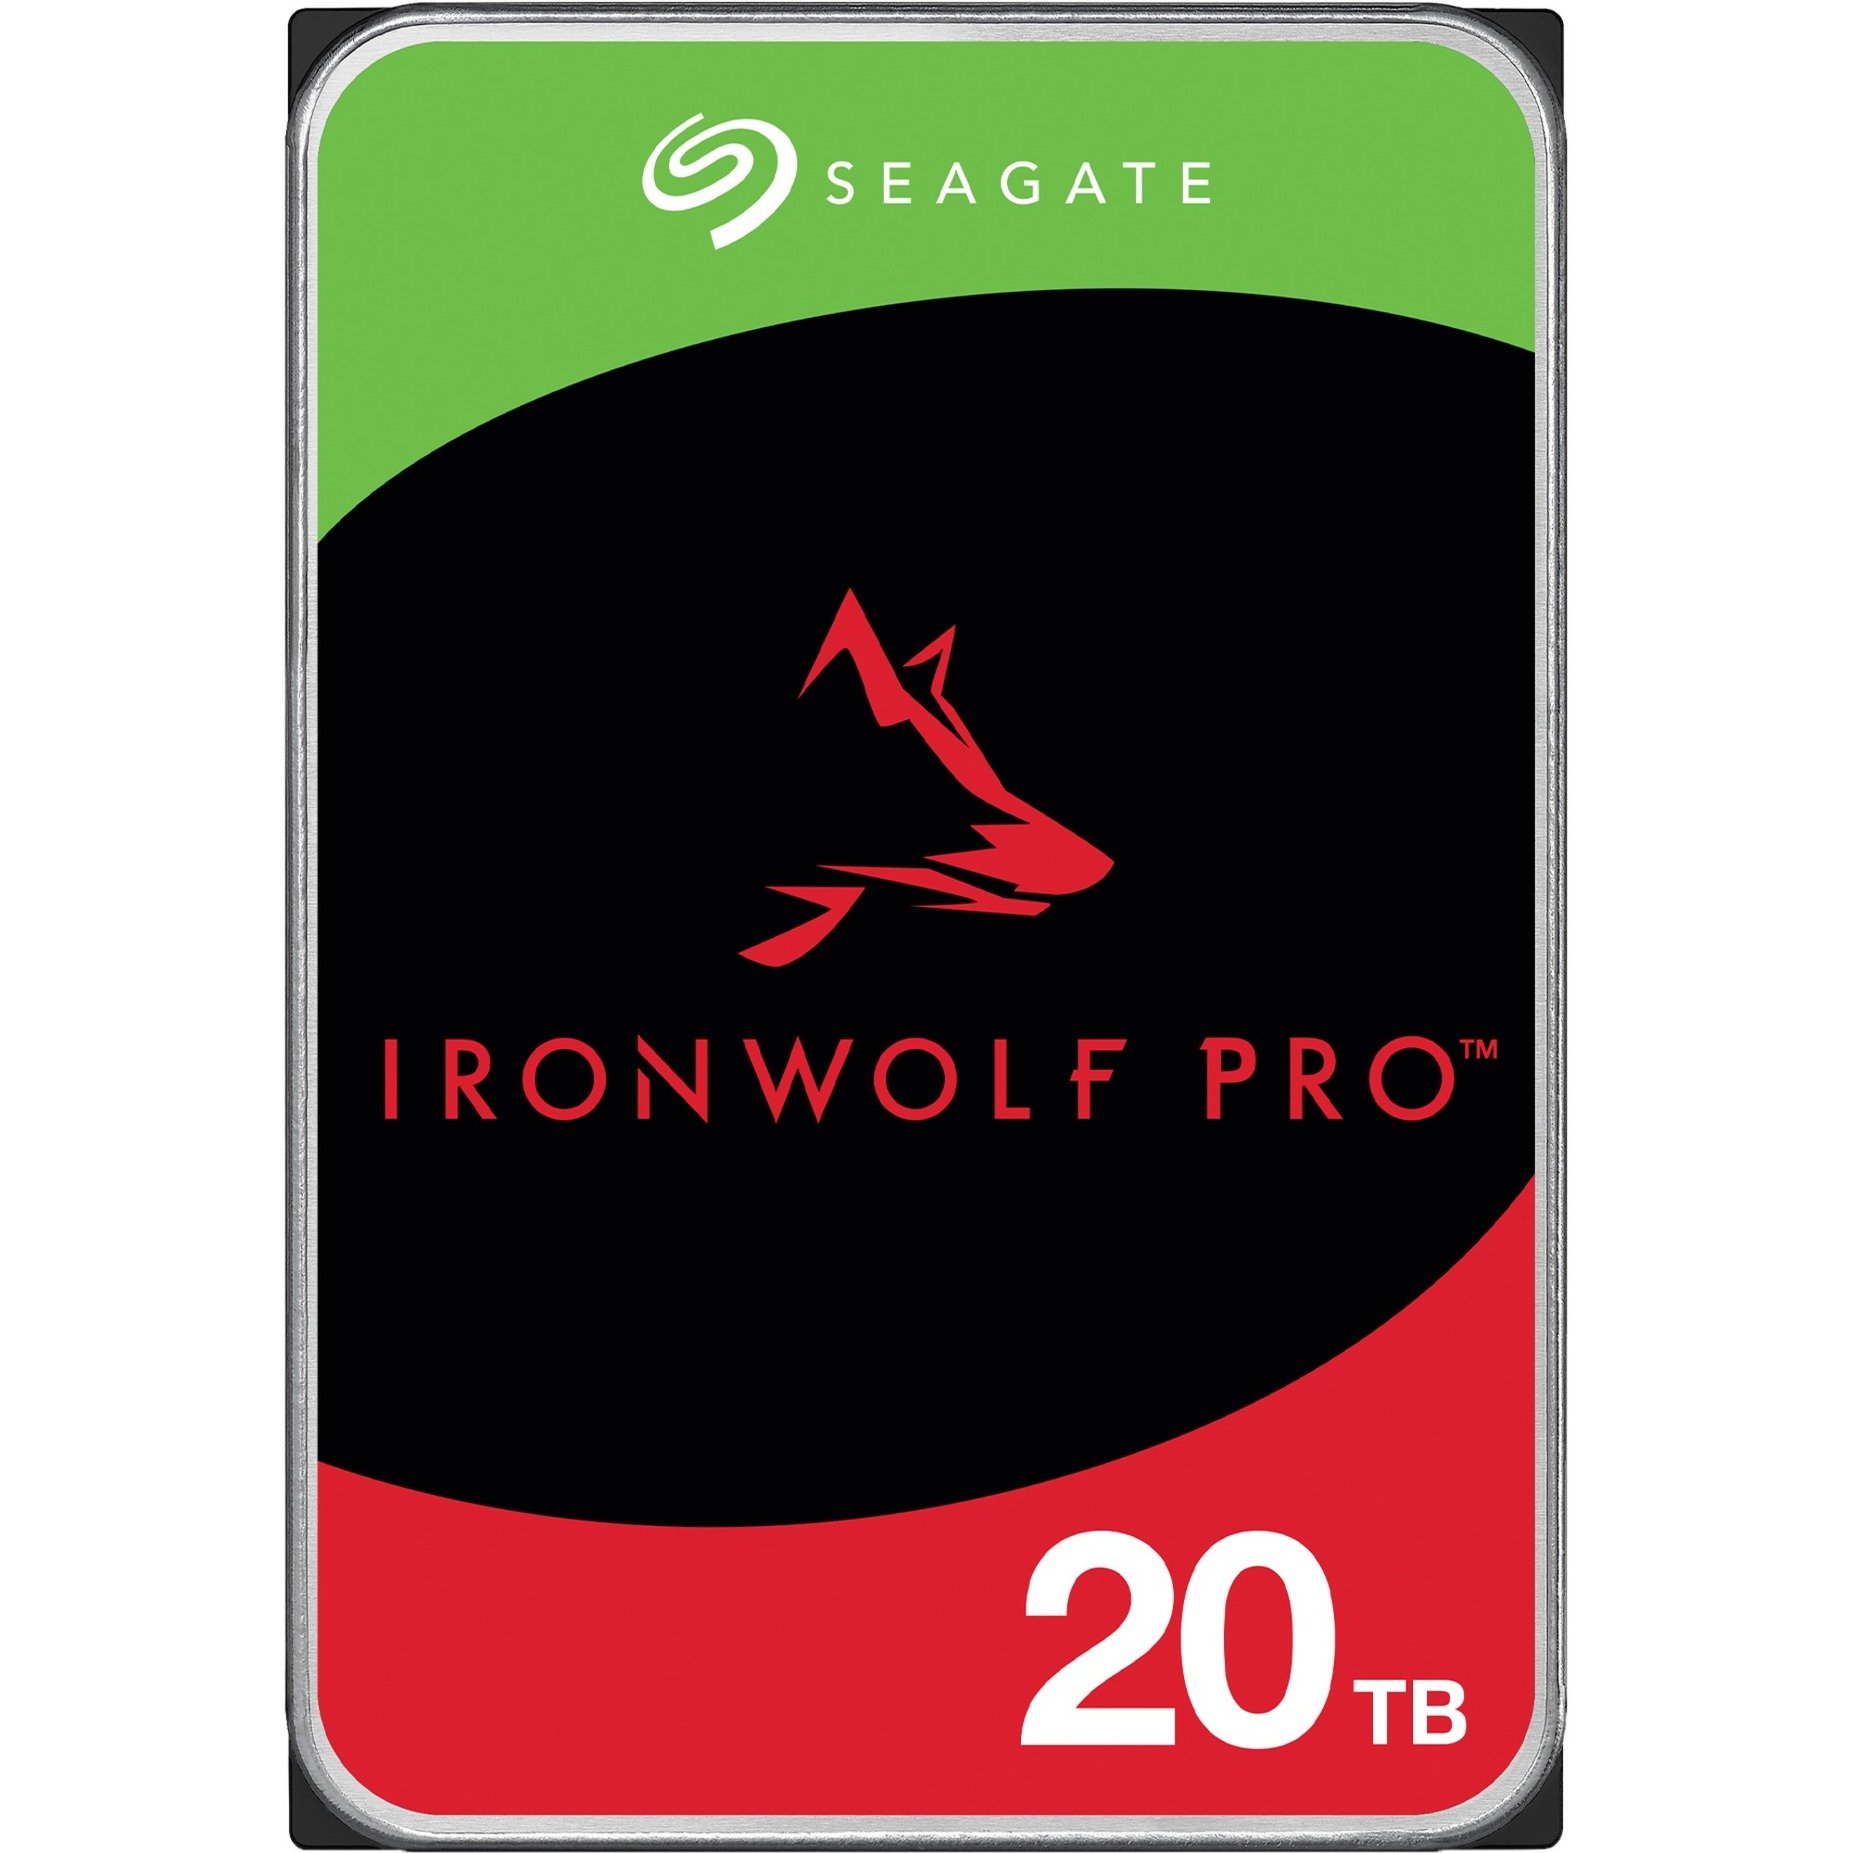 IronWolf Pro NAS 20 TB CMR, Festplatte von Seagate